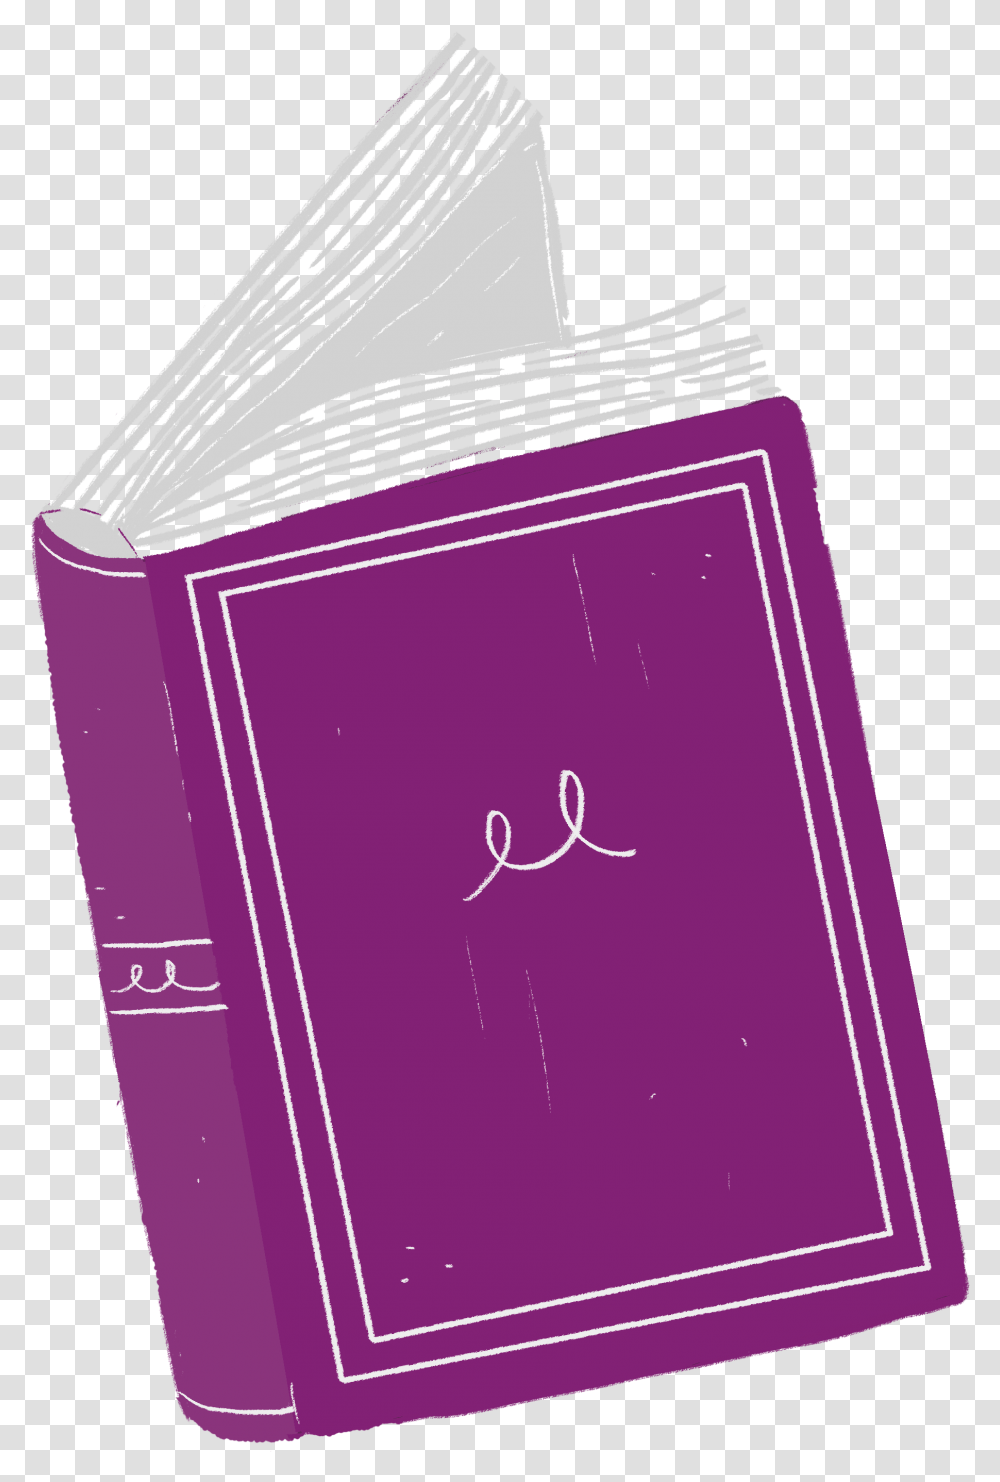 Book Cover Download Illustration, Diary, File Binder, File Folder Transparent Png